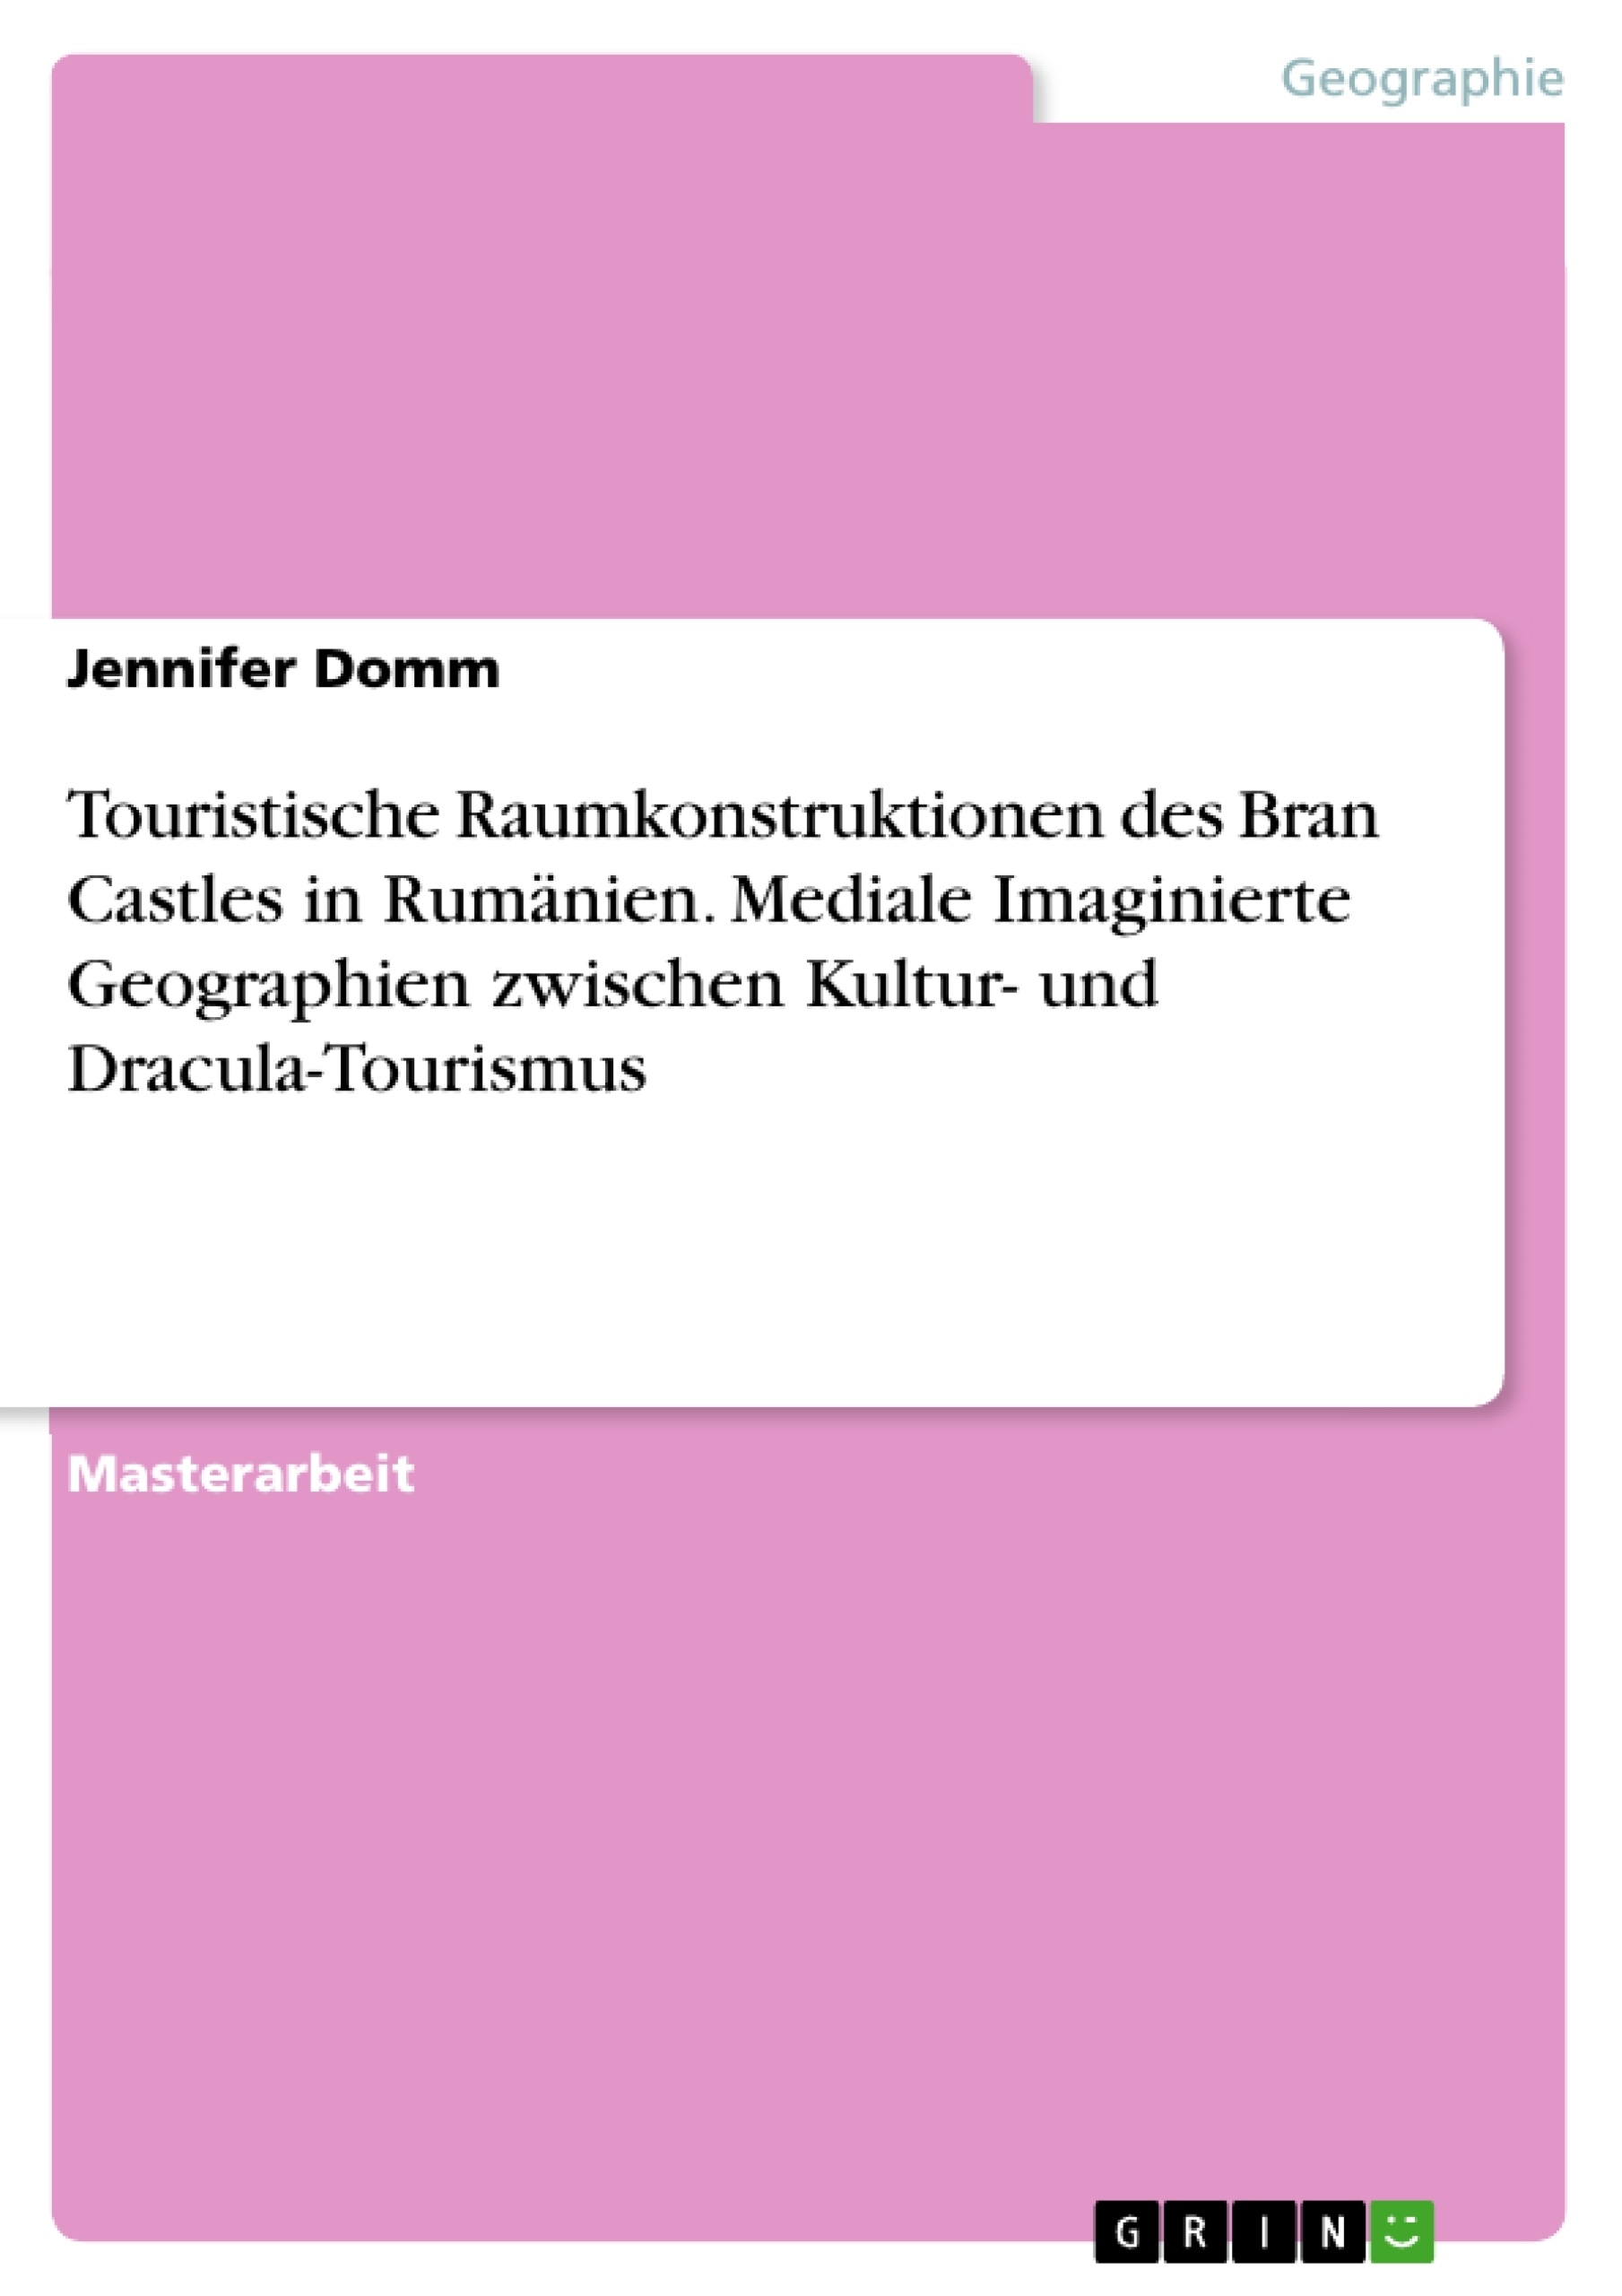 Titre: Touristische Raumkonstruktionen des Bran Castles in Rumänien. Mediale Imaginierte Geographien zwischen Kultur- und Dracula-Tourismus